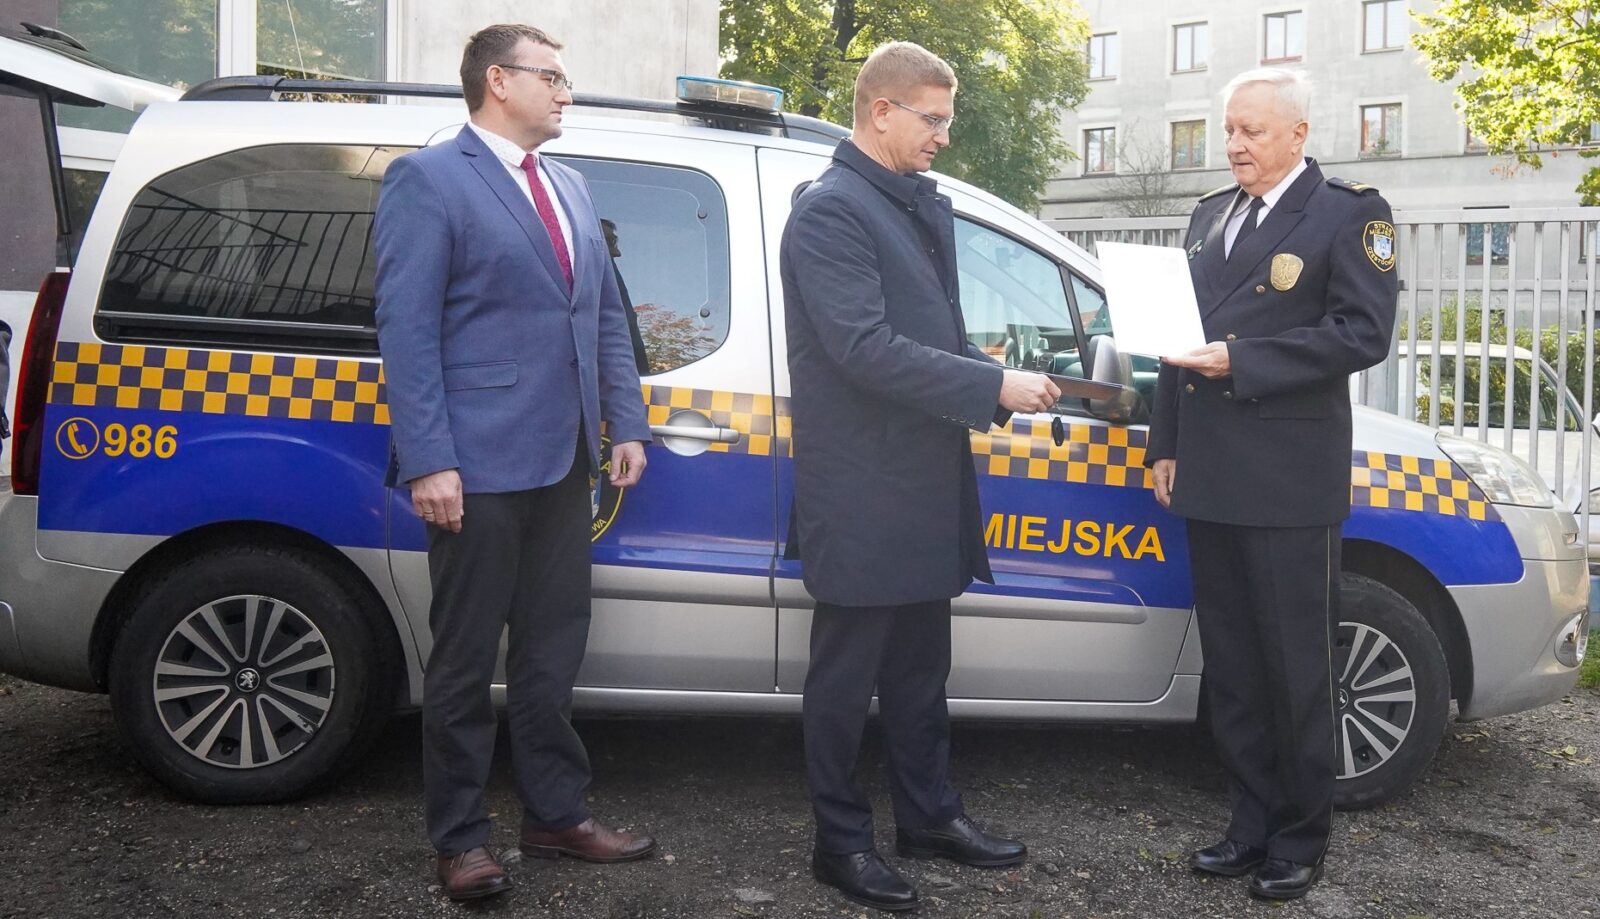 Władze miasta przekazały Straży Miejskiej kolejny samochód, który ma służyć mieszkankom i mieszkańcom Częstochowy 1